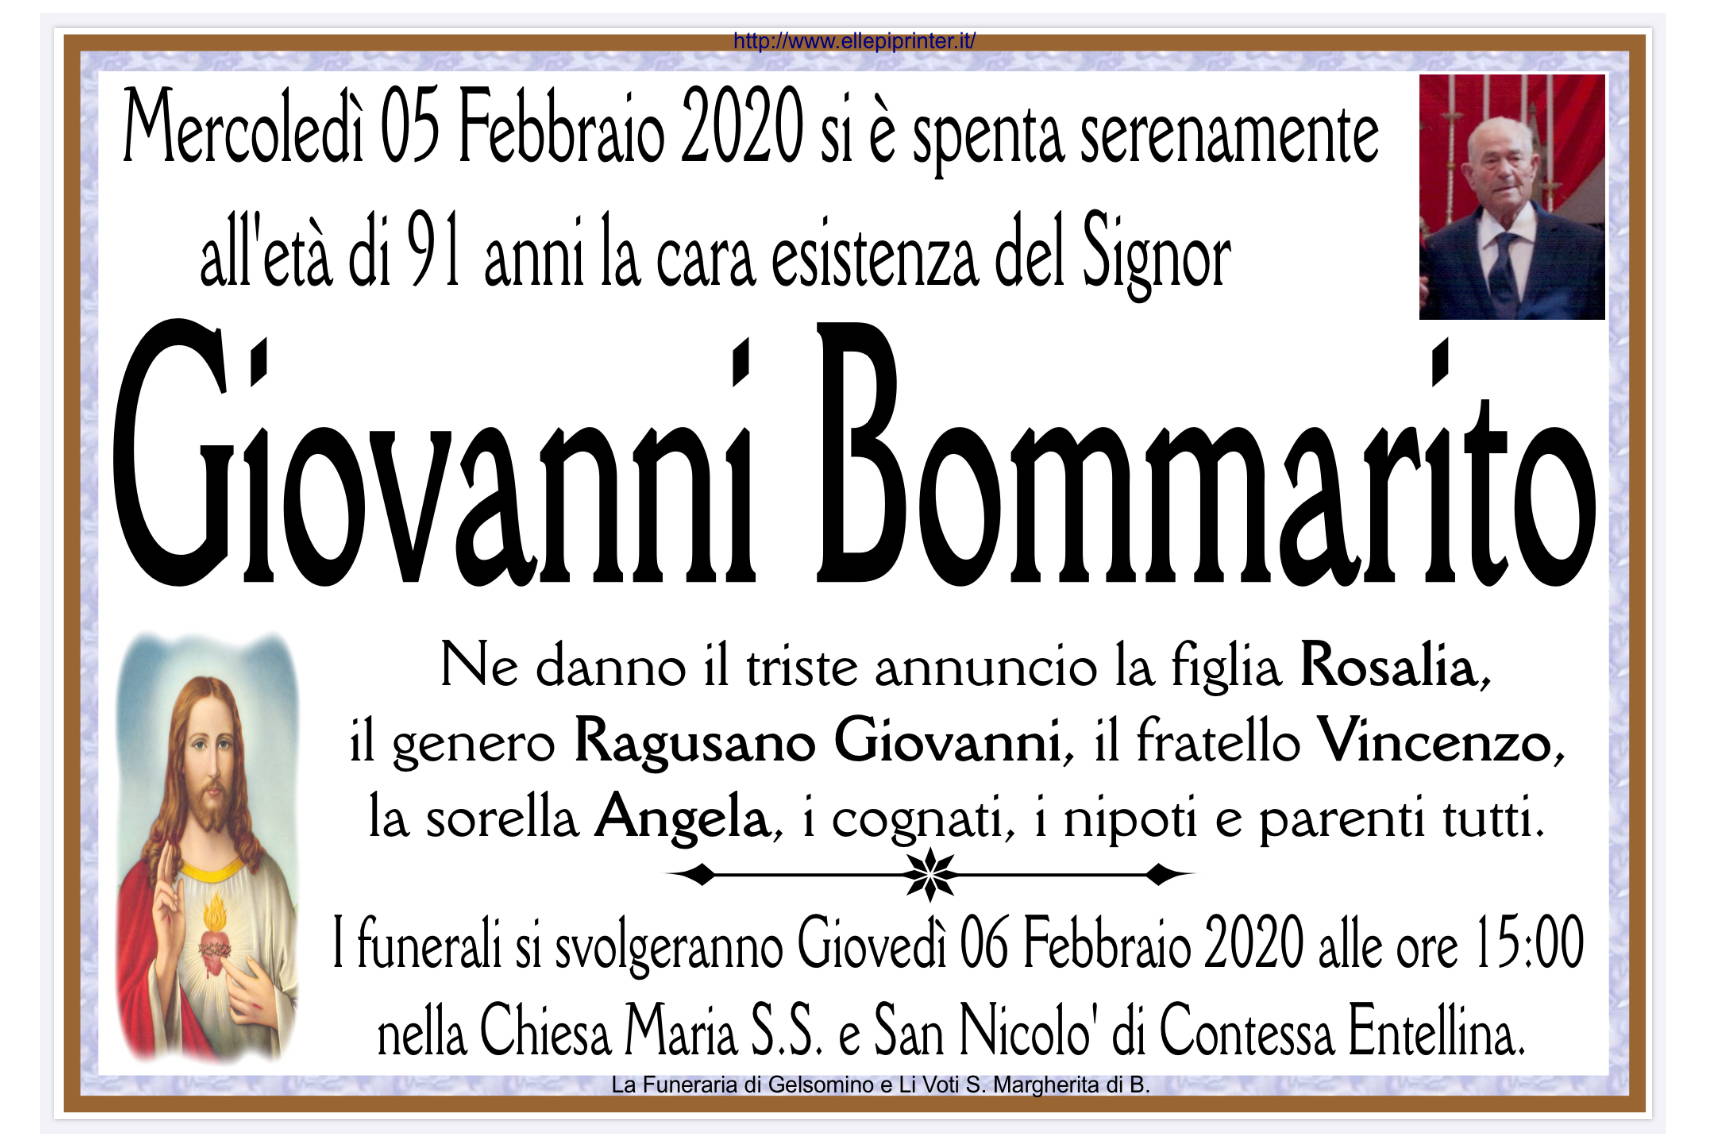 Giovanni Bommarito